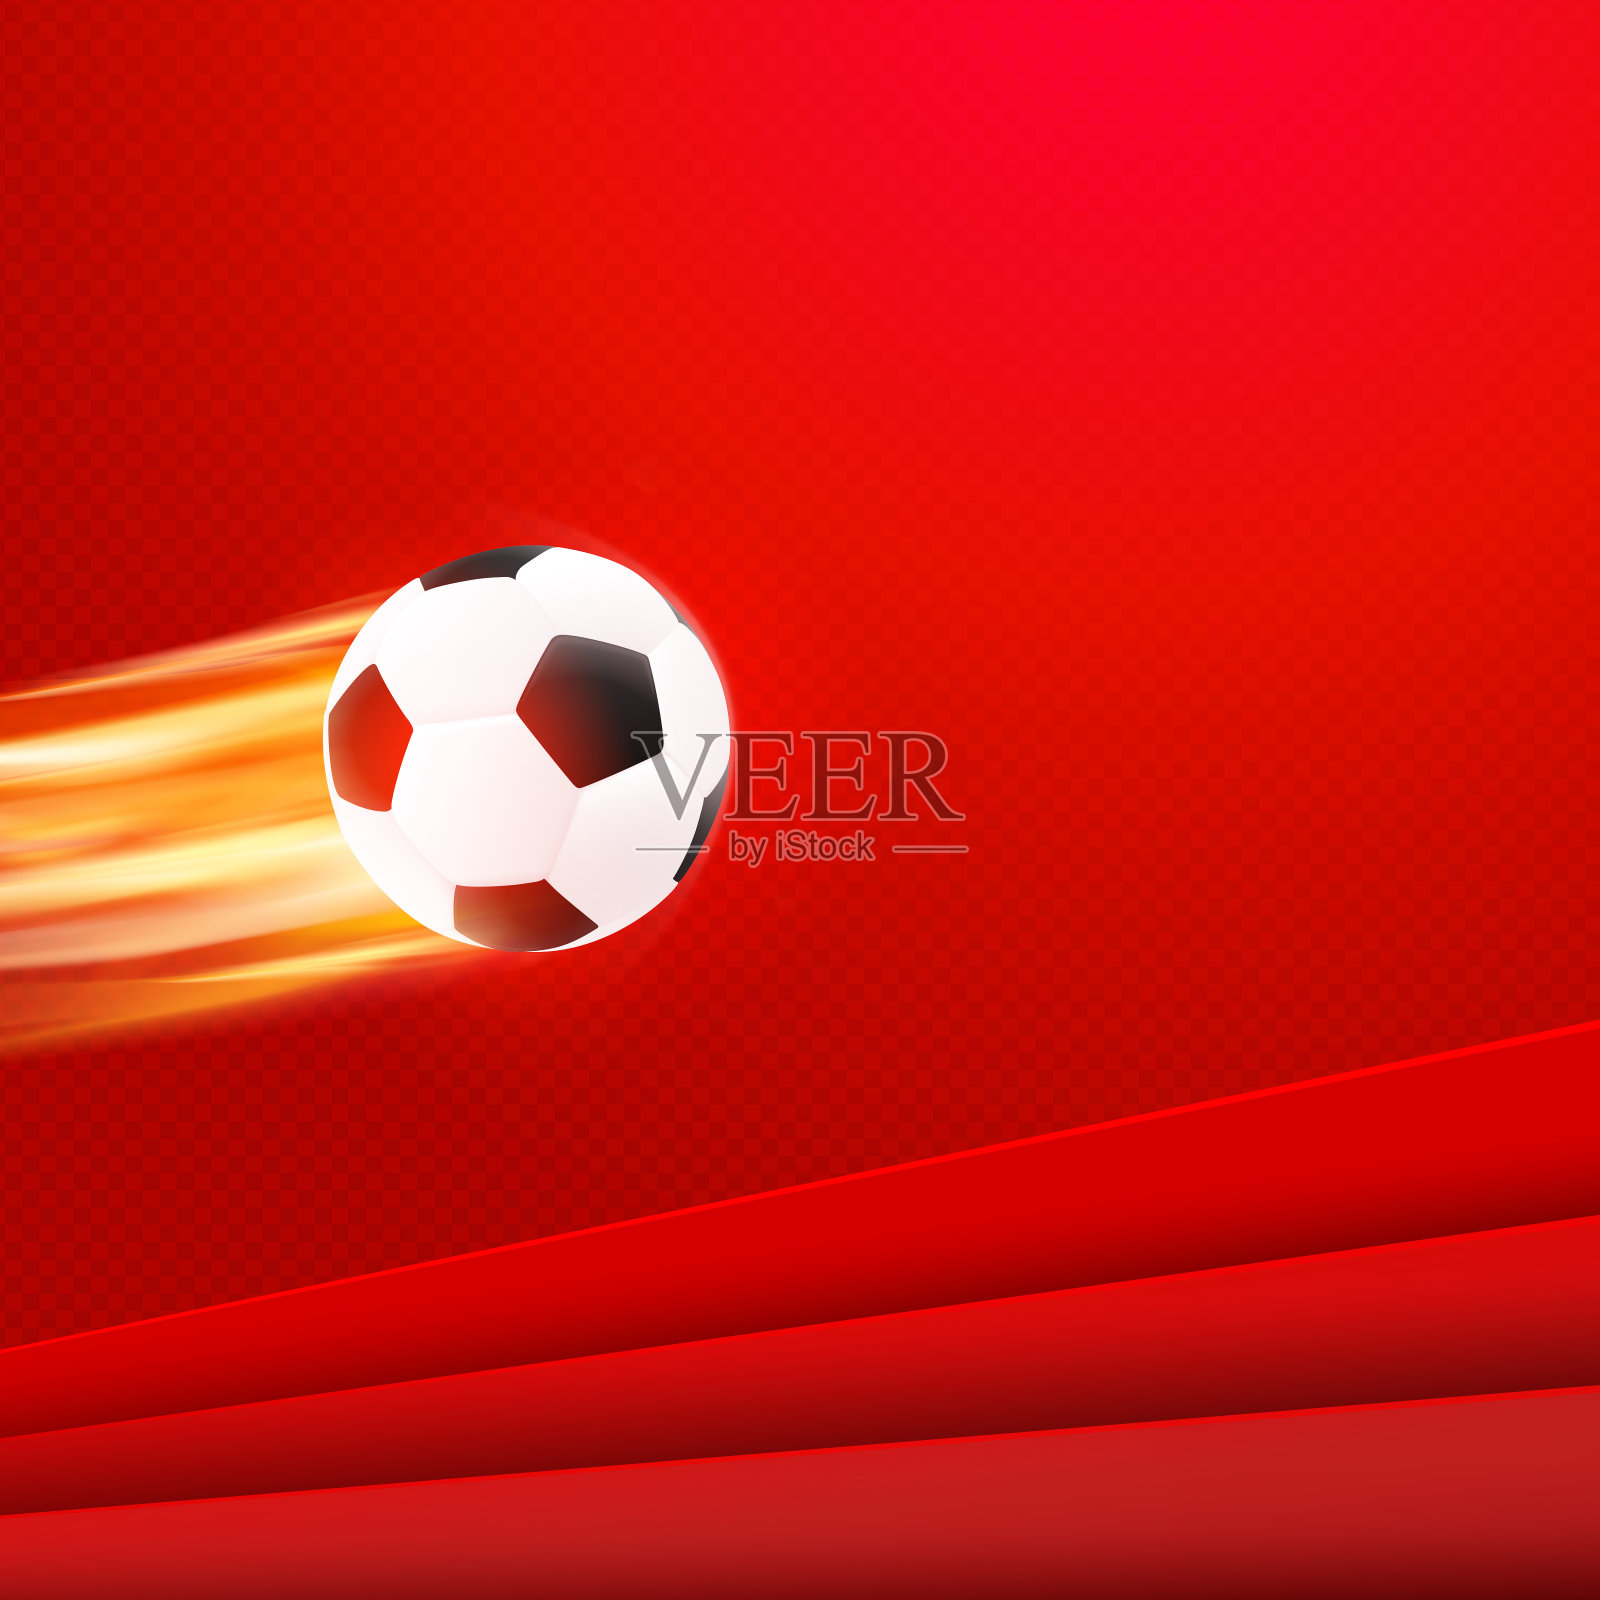 足球海报设计。红色矢量背景与黑白真实足球在火焰火焰。运动旗帜模板插画图片素材